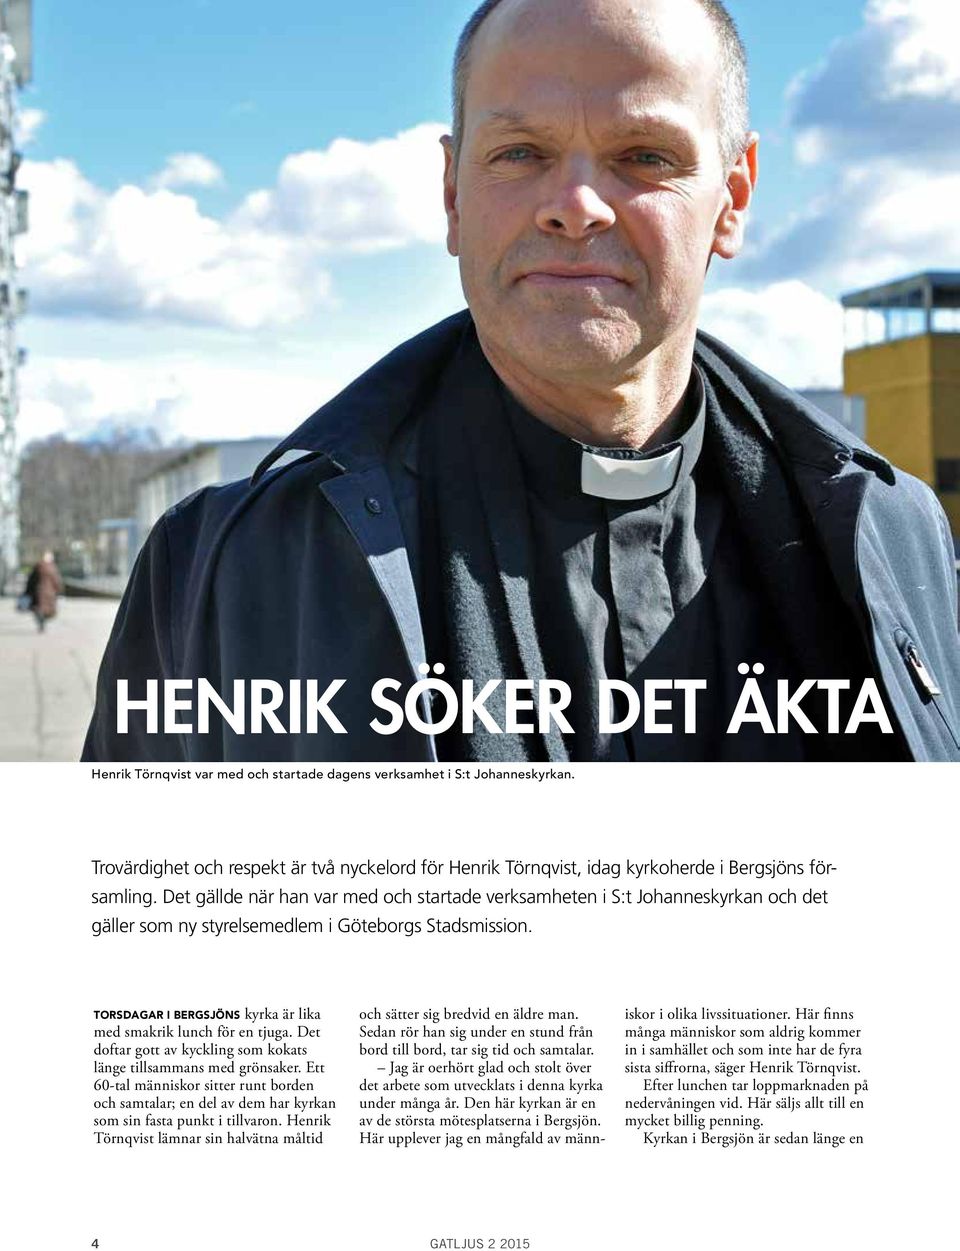 Det gällde när han var med och startade verksamheten i S:t Johanneskyrkan och det gäller som ny styrelsemedlem i Göteborgs Stadsmission.